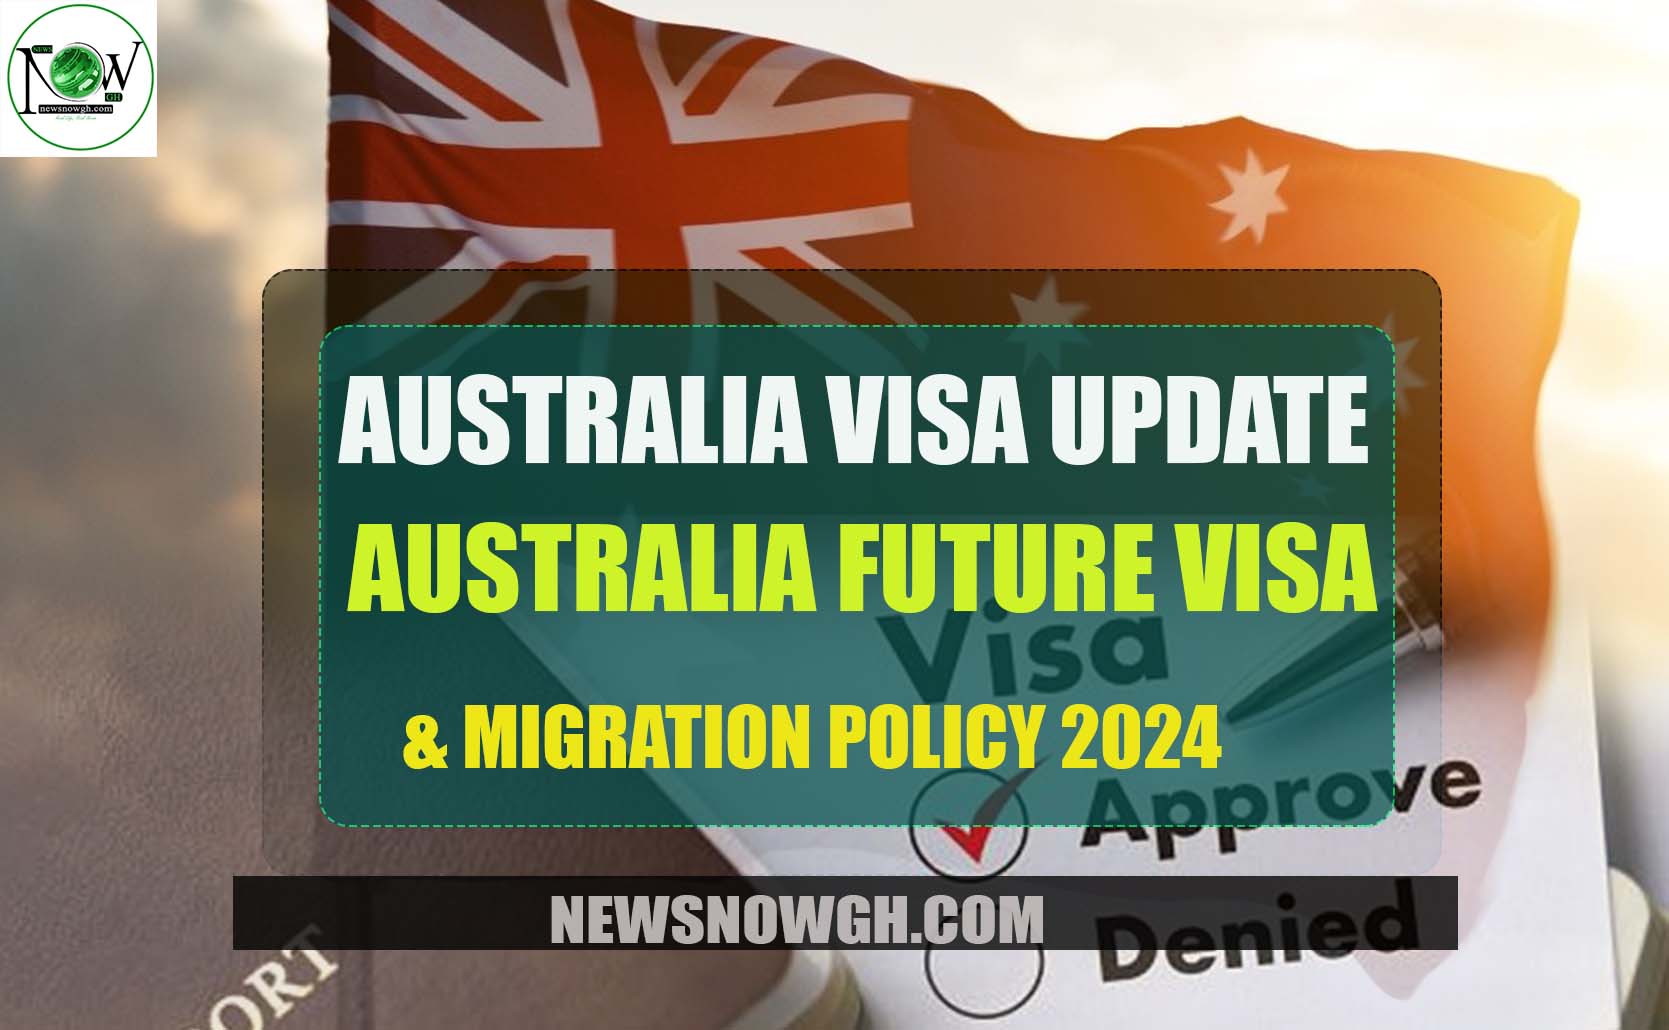 Australia Future Visa & Migration Policy 2024 Australia Visa